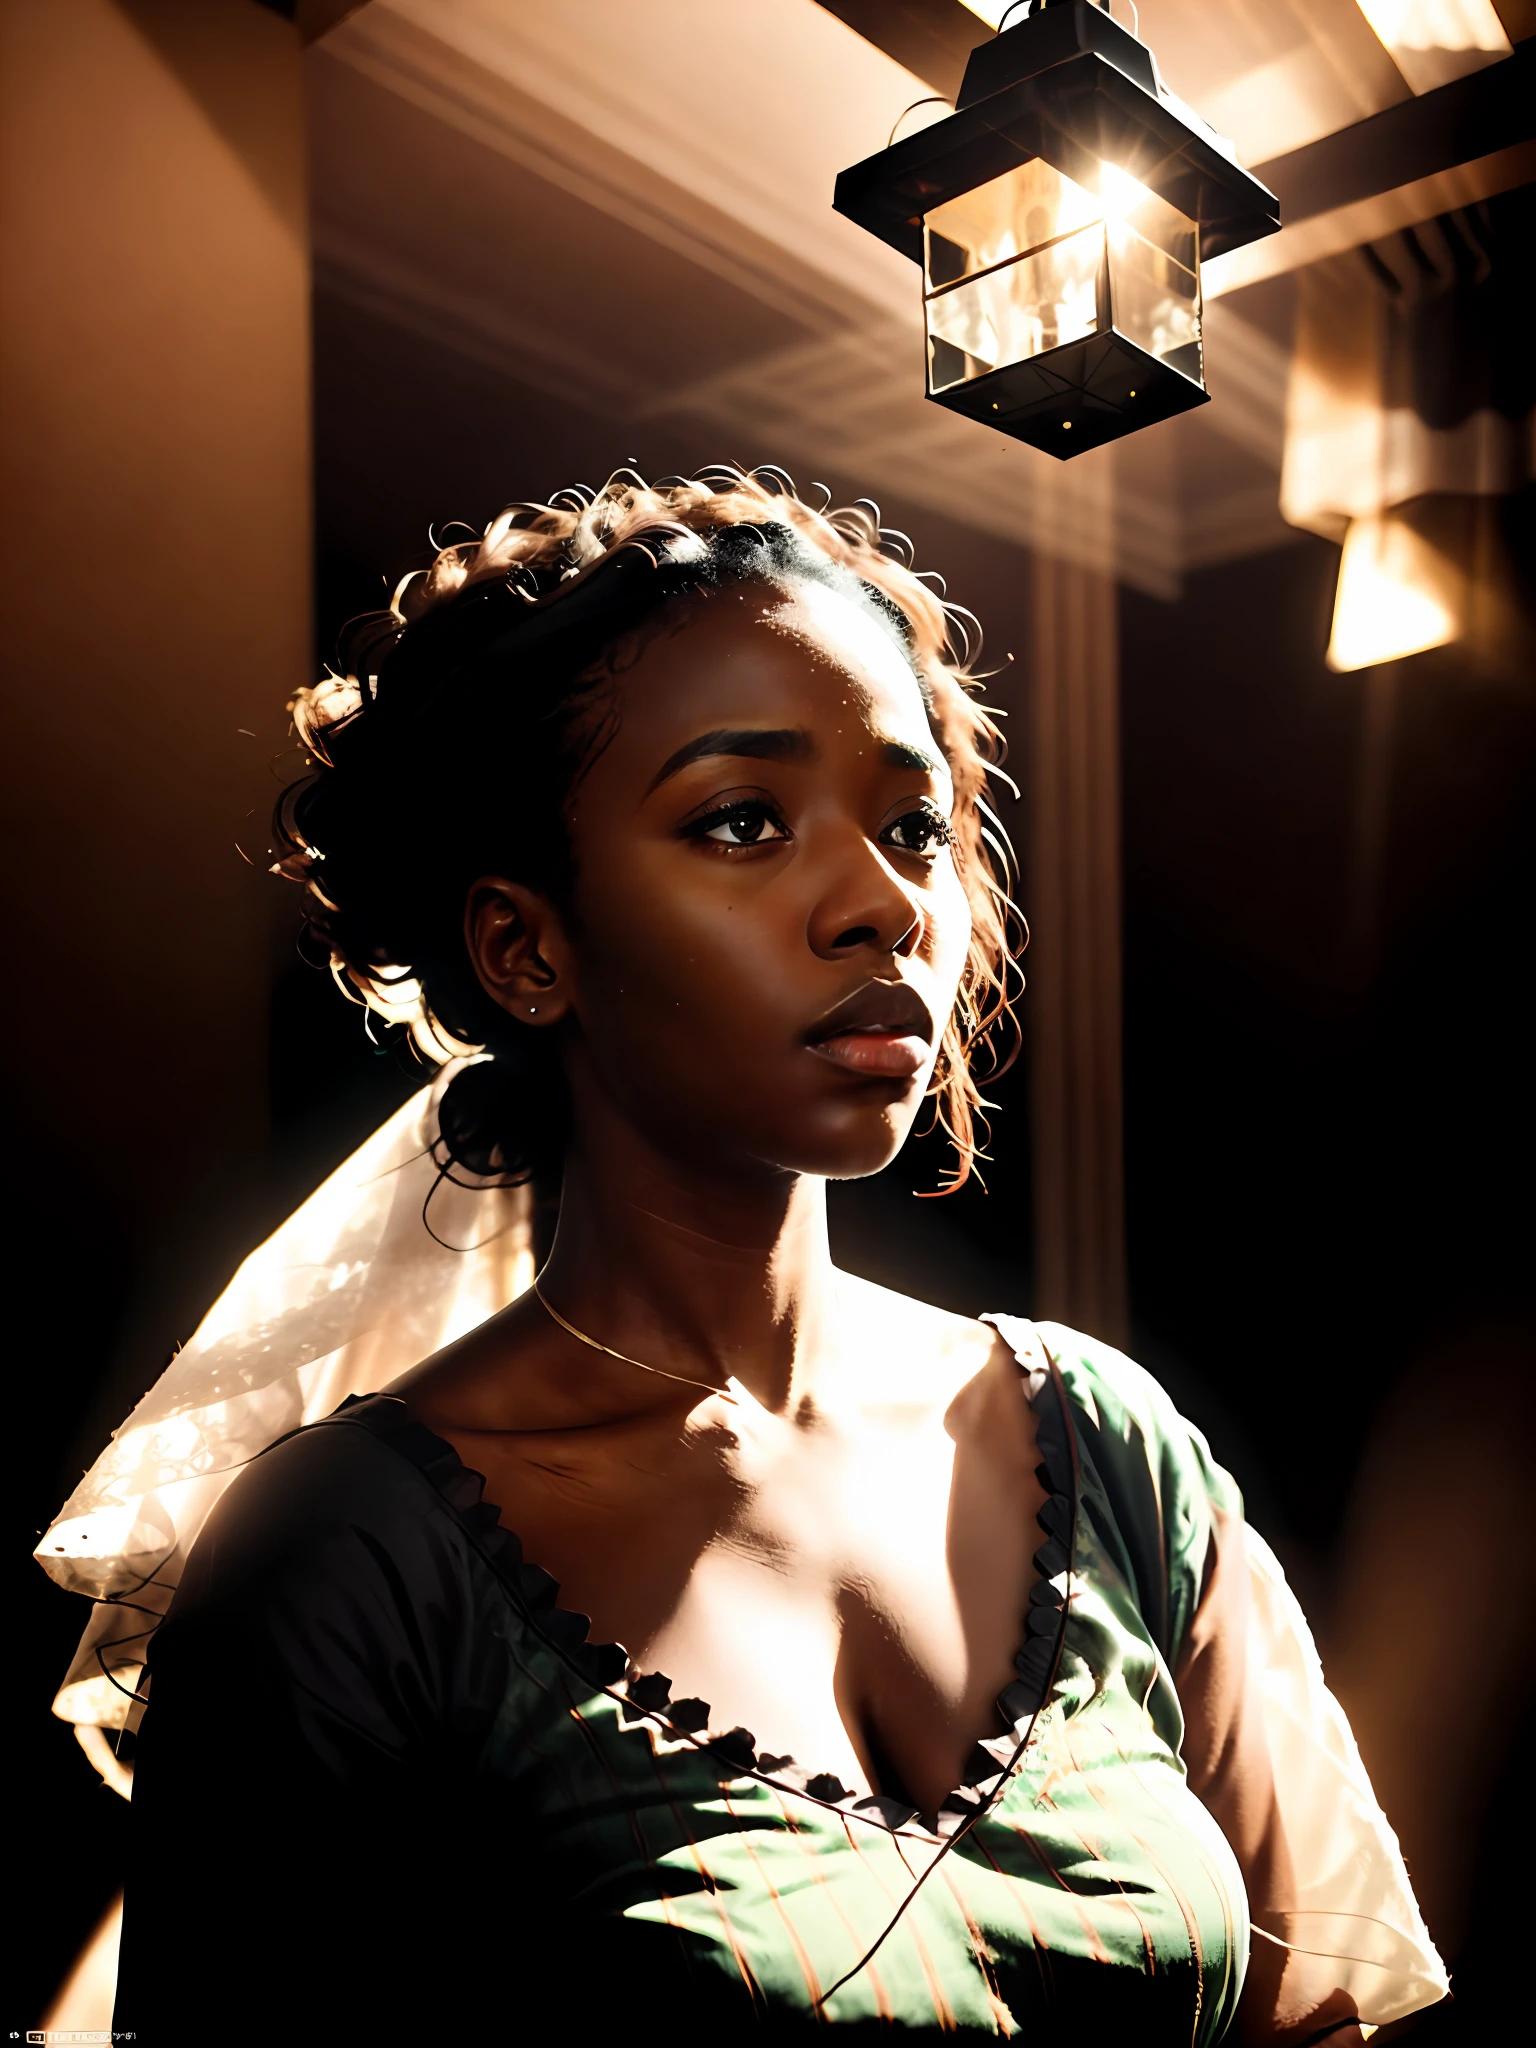 تصوير فوتوغرافي سينمائي مفصل للغاية لشبح جميل ((بشرة داكنة)) امرأة أفريقية داخل شقة, يرتدون ملابس بيضاء, باوهاوس-esque, مفرط التفاصيل, مشؤومة, أثيري, الإضاءة الدرامية, تباين ناعم, تلاشى